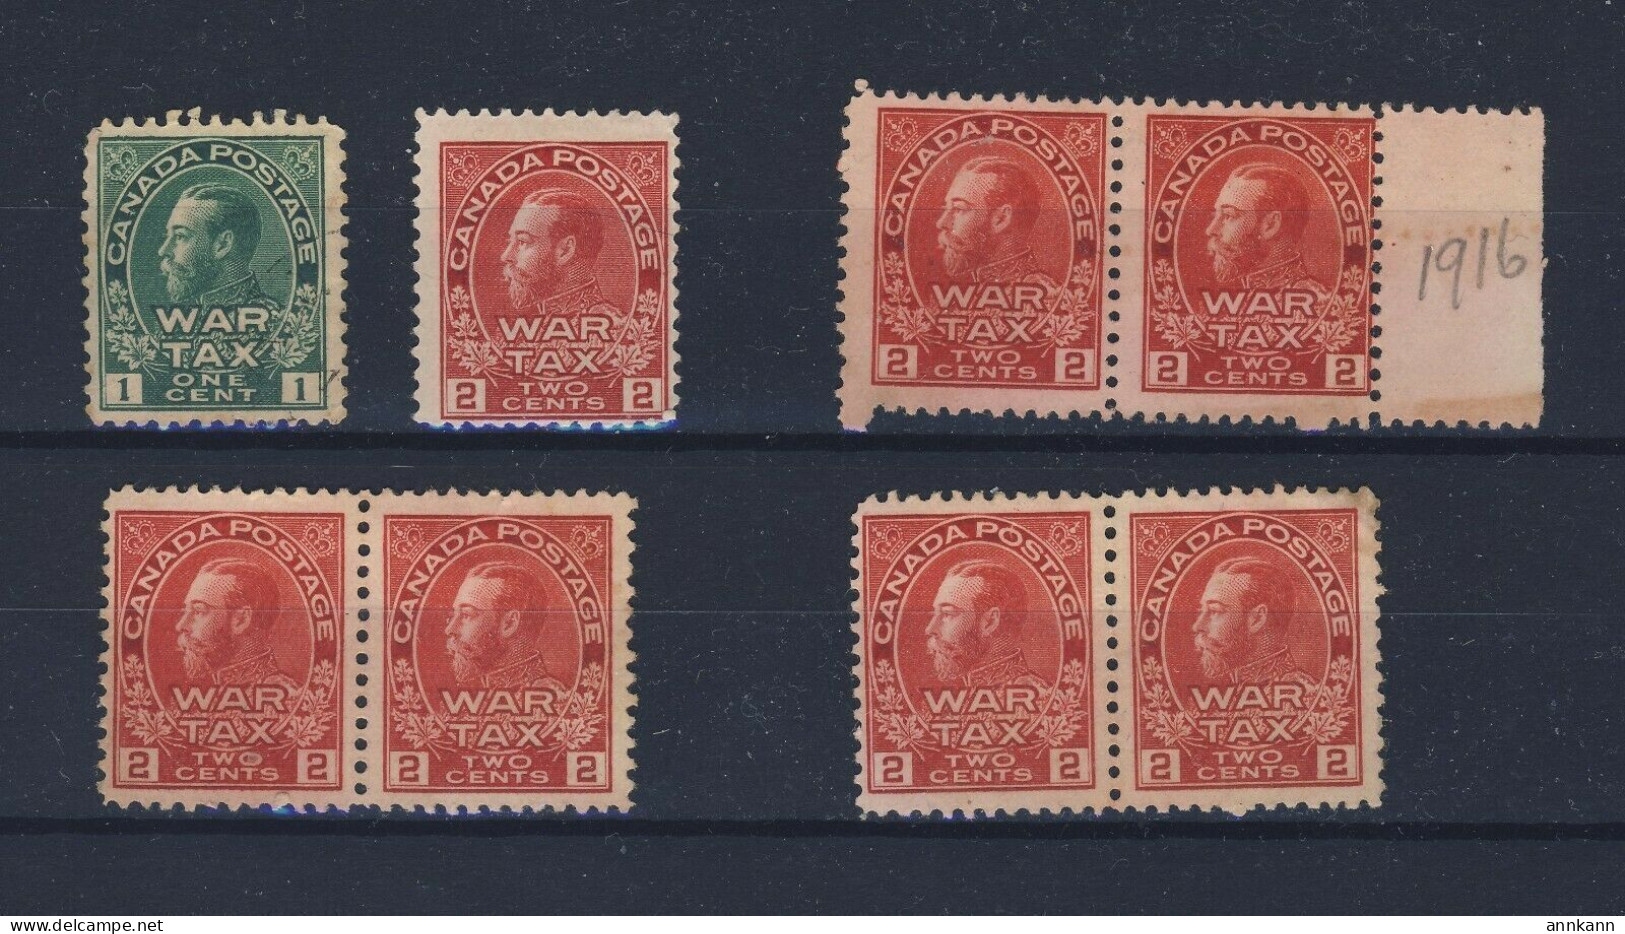 8x Canada Mint Admiral War Tax Stamps MR1-1c MR2-2c 3x Pairs MR2-2c GV= $100.00 - War Tax